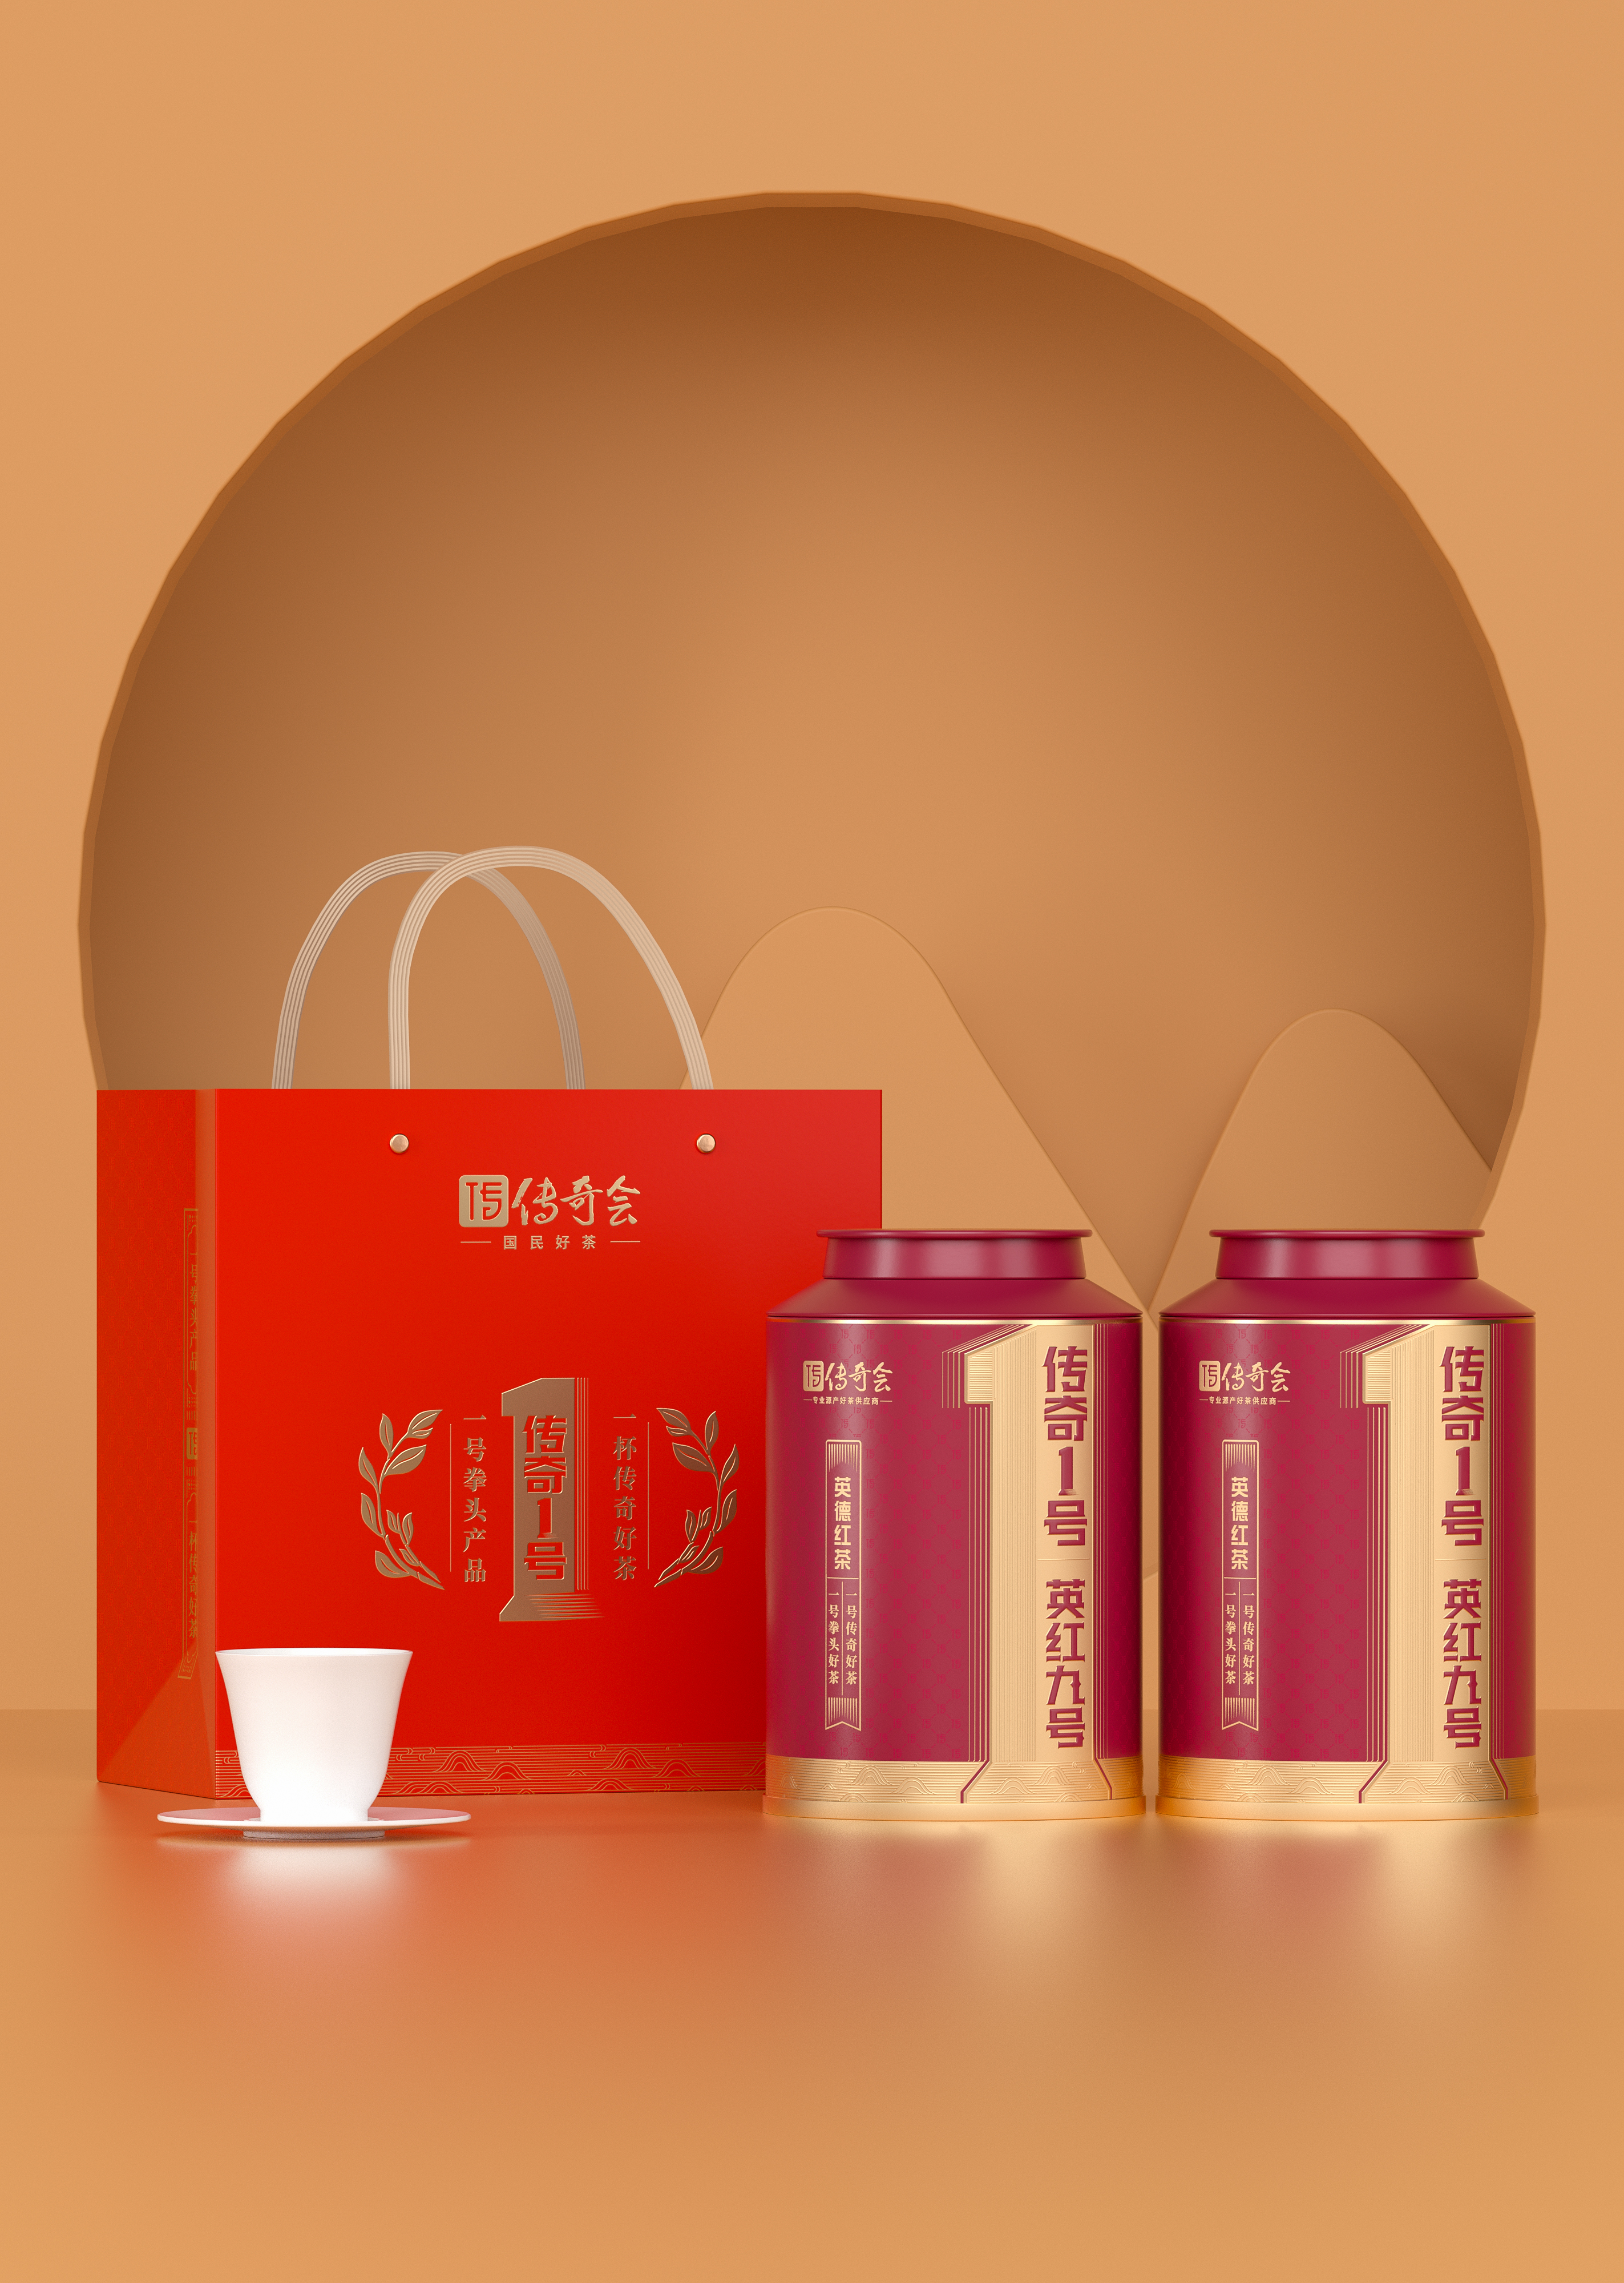 传奇会茶叶 英德红茶 正宗英红九号广东特产一级浓香型工夫红茶送礼礼盒装500g